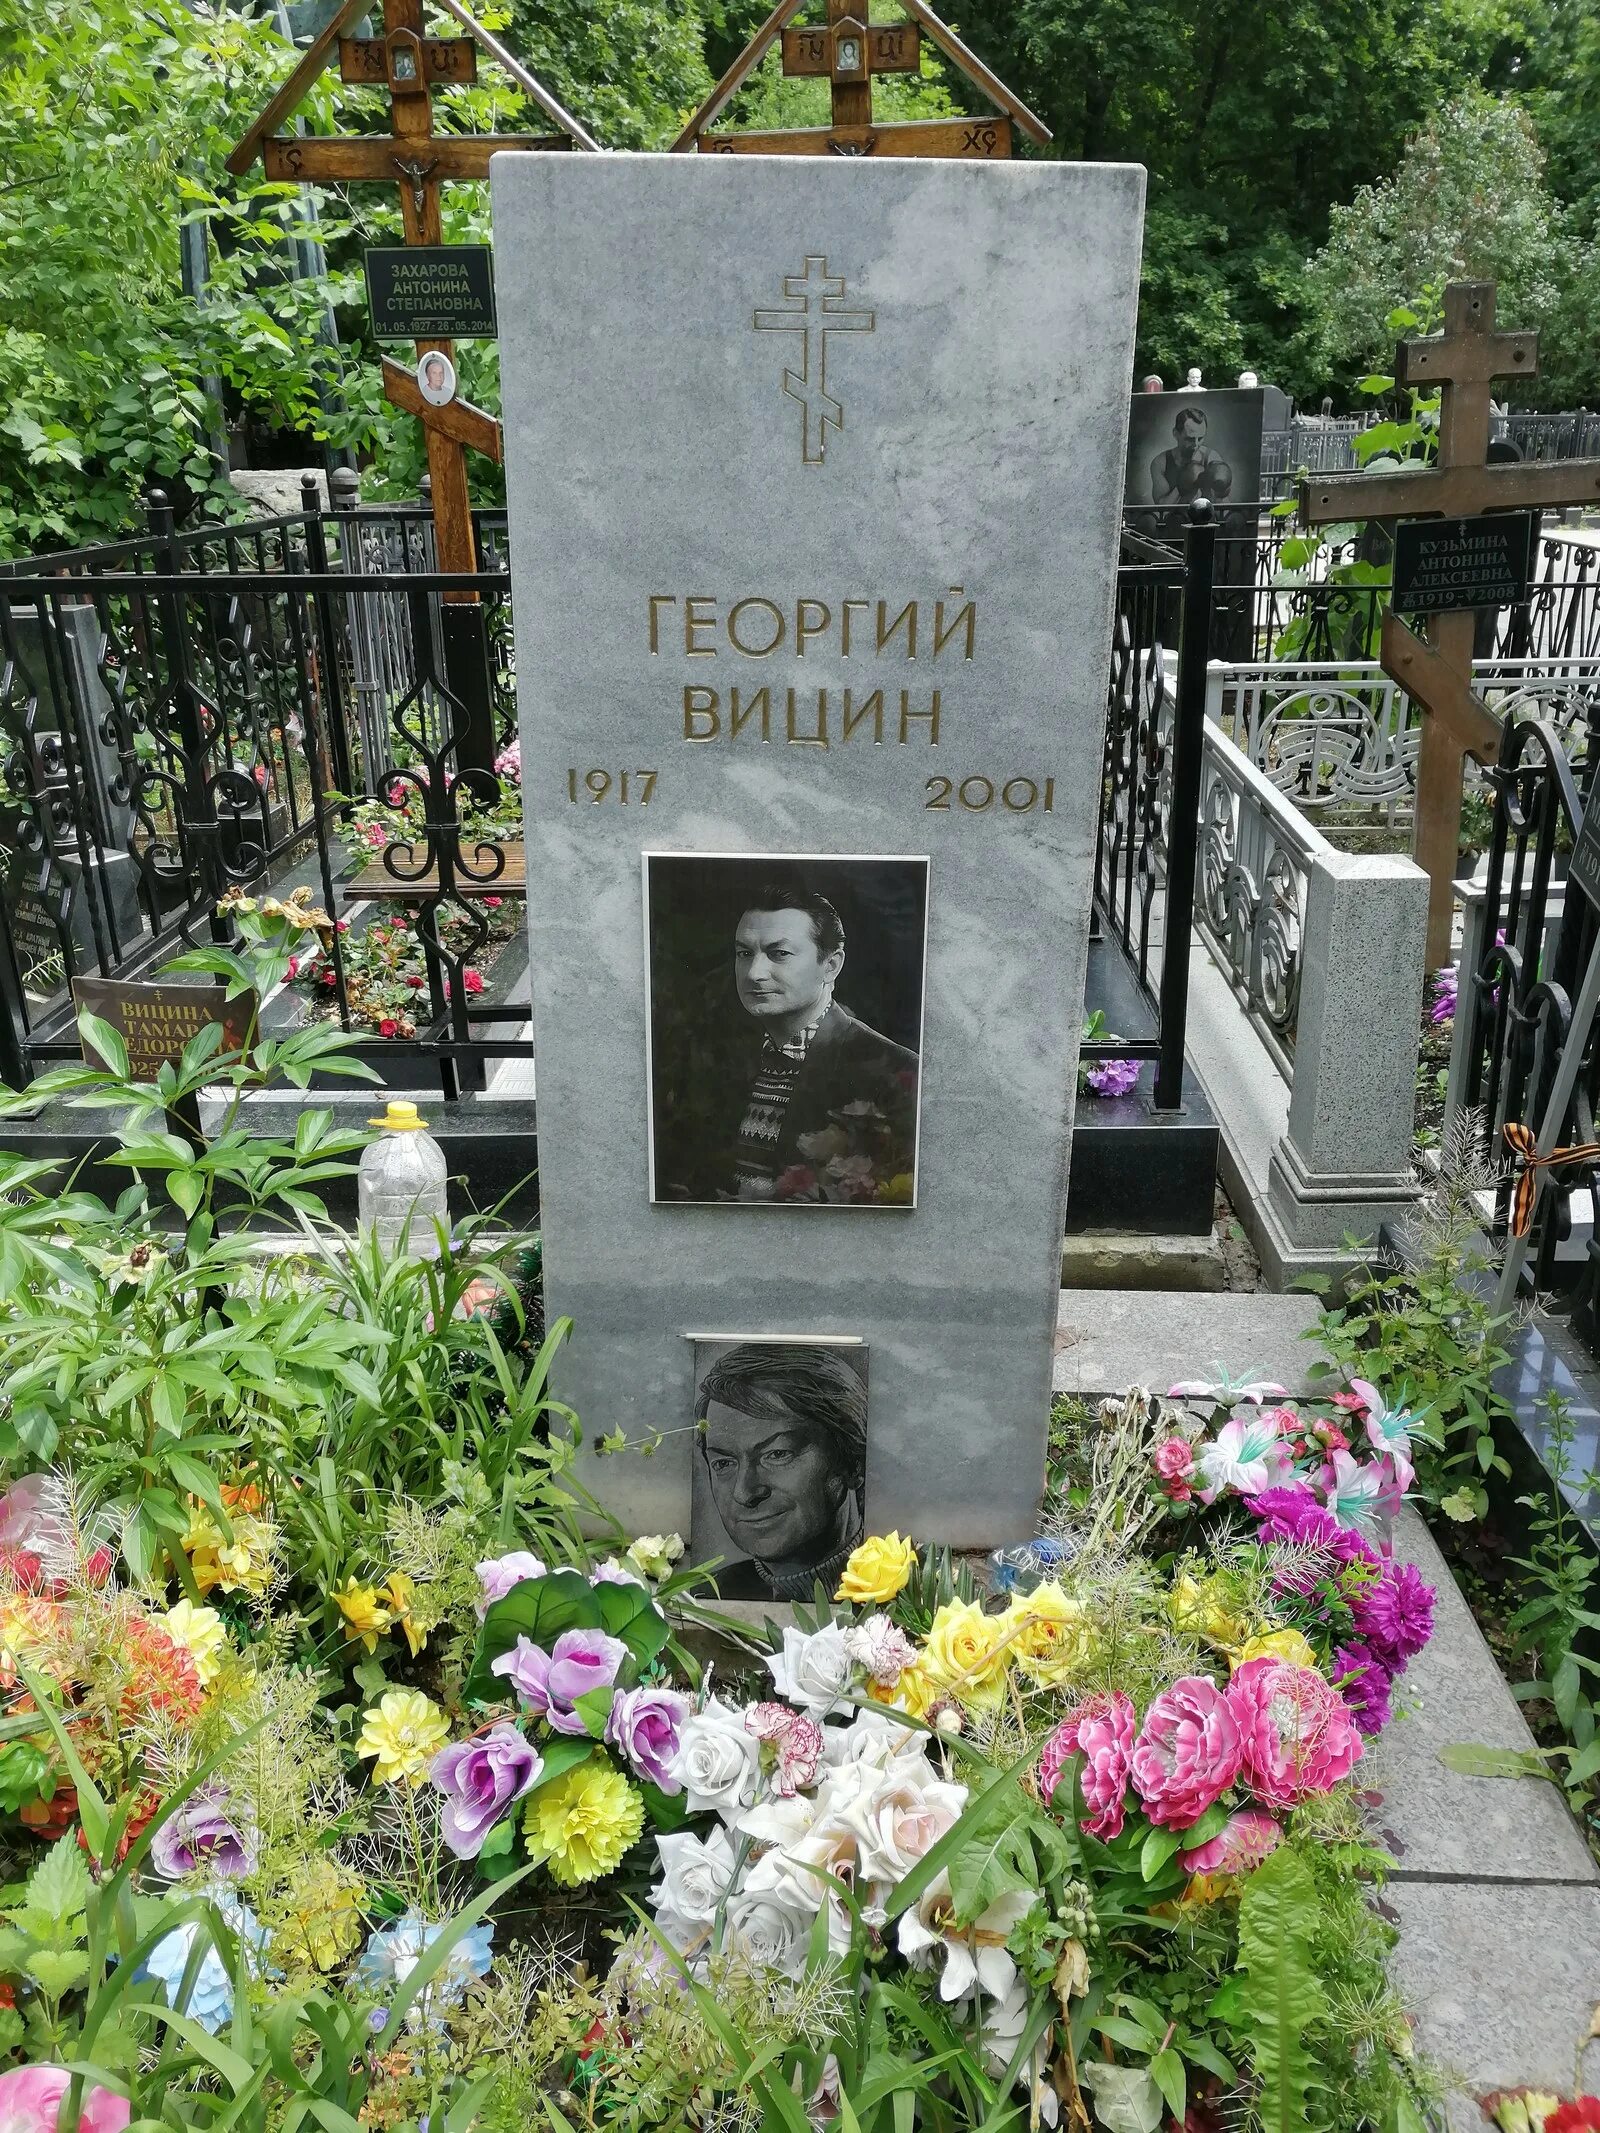 Могила вицина. Могила Георгия Вицина на Ваганьковском кладбище.